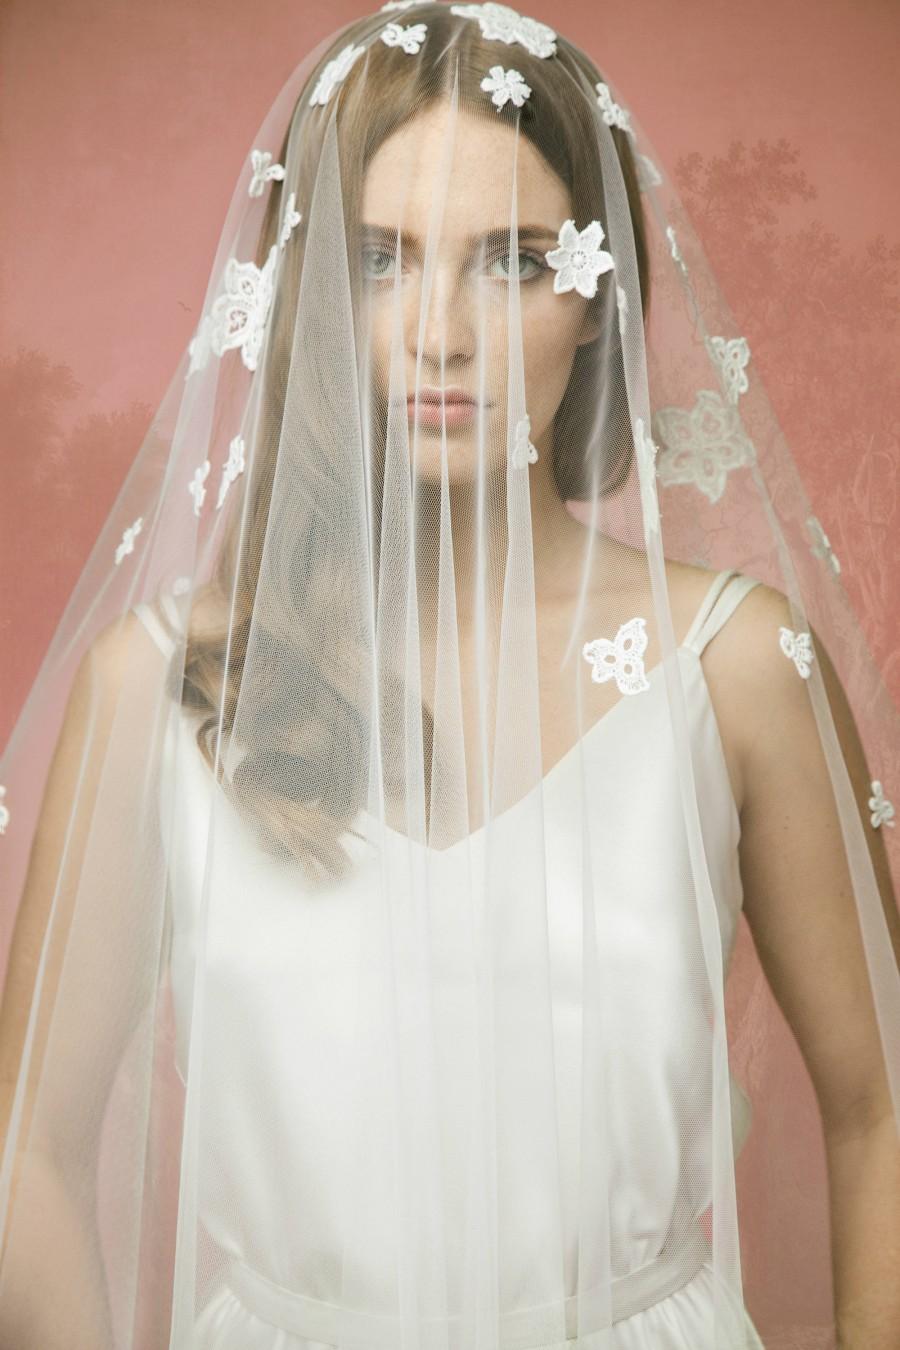 Hochzeit - Lace Bridal Veil A10, Lace Wedding Veil, Lace Applique Veil,Cotton Lace Veil, Tulle Lace Veil, Double Layer Veil, Cathedral Veil, Chapel